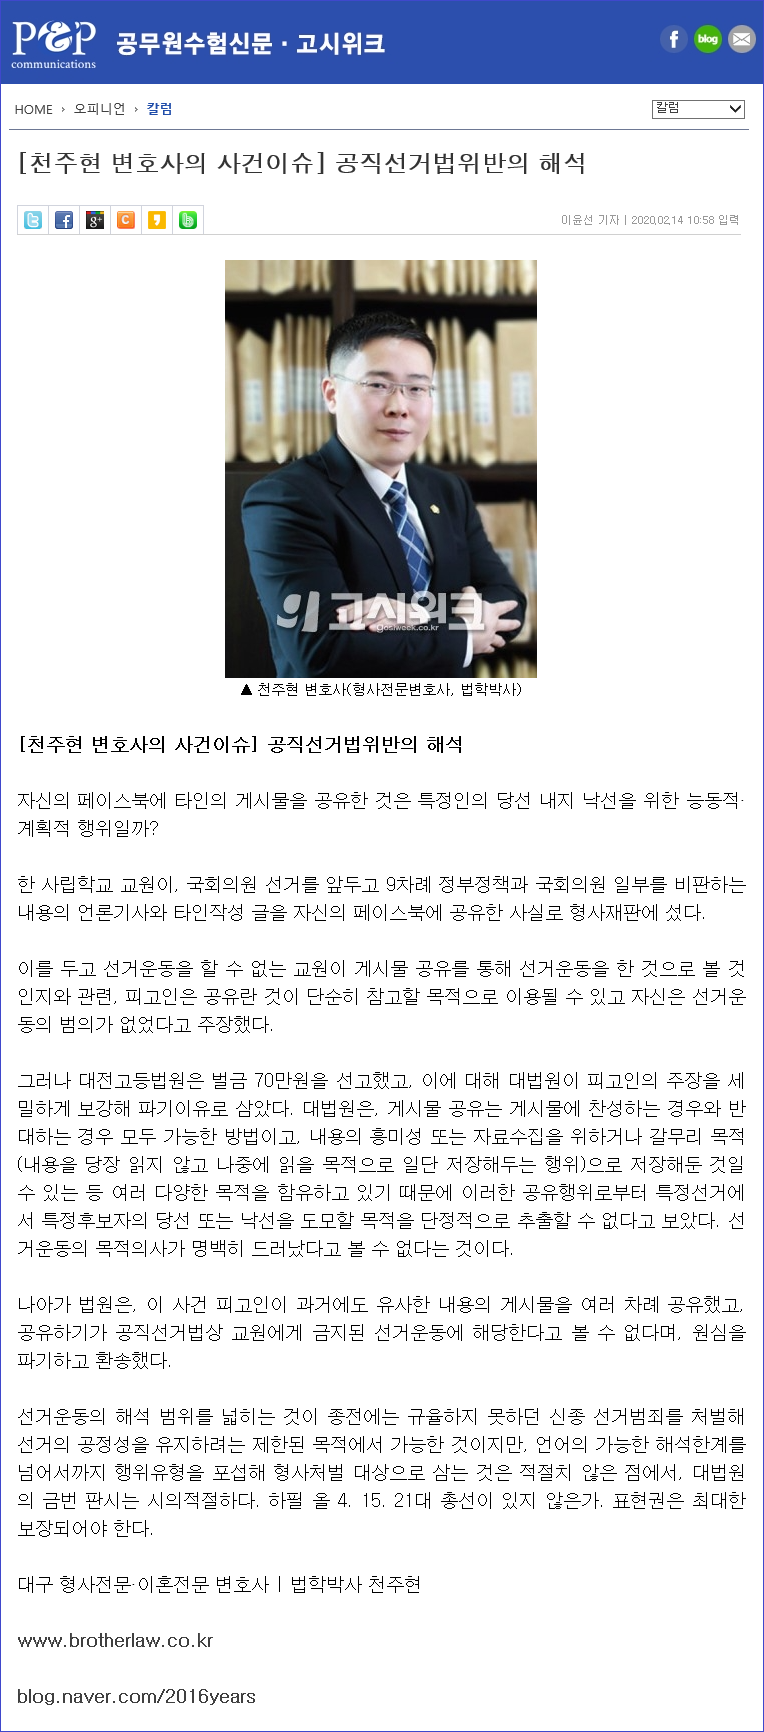 200214-천주현 변호사의 사건이슈(공직선거법위반의 해석)-블로그용.png